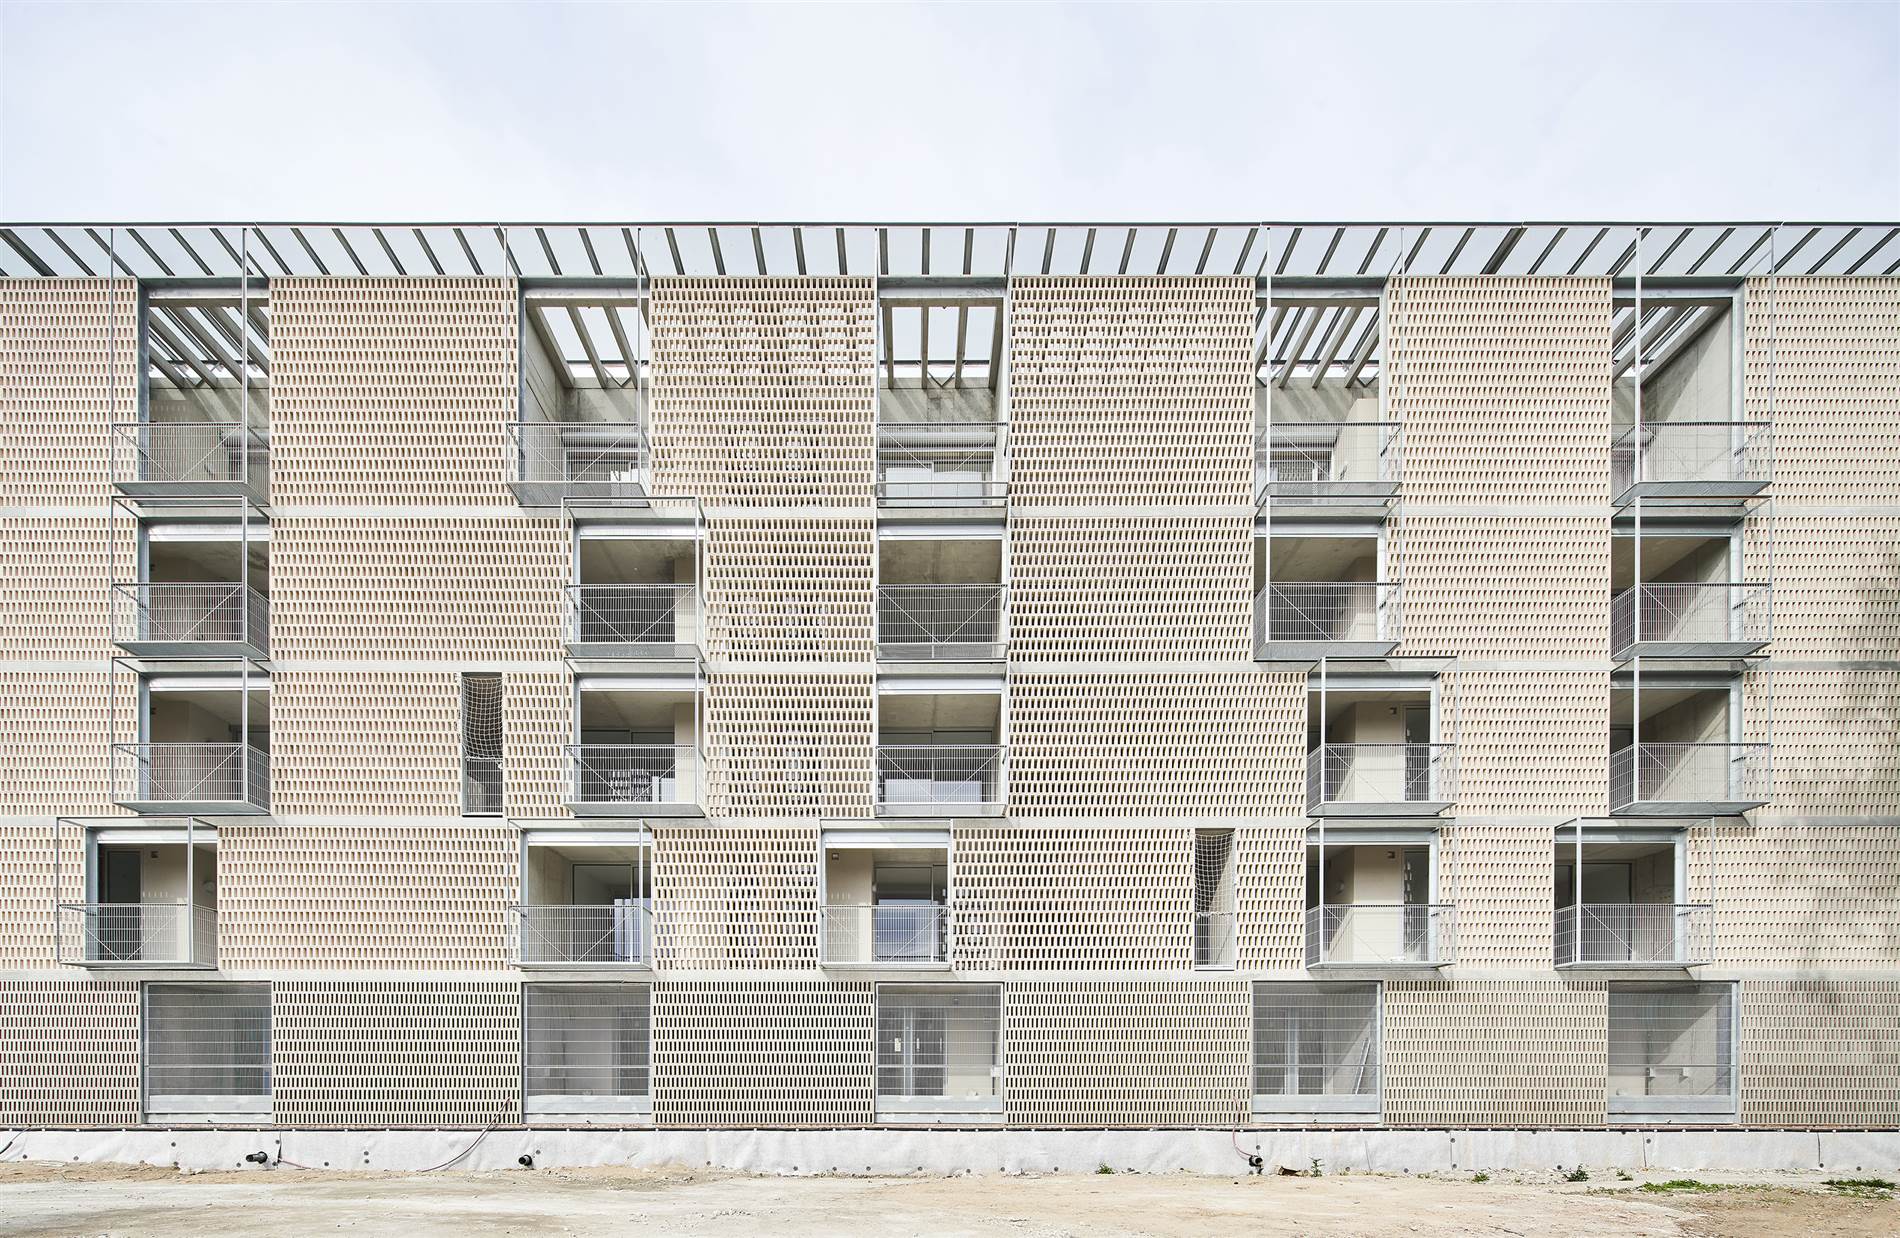 54 Viviendas Sociales en Bon Pastor, un proyecto llevado a cabo por el estudio Peris+Toral Arquitectes y Jaime Pastor en Barcelona. Fachada